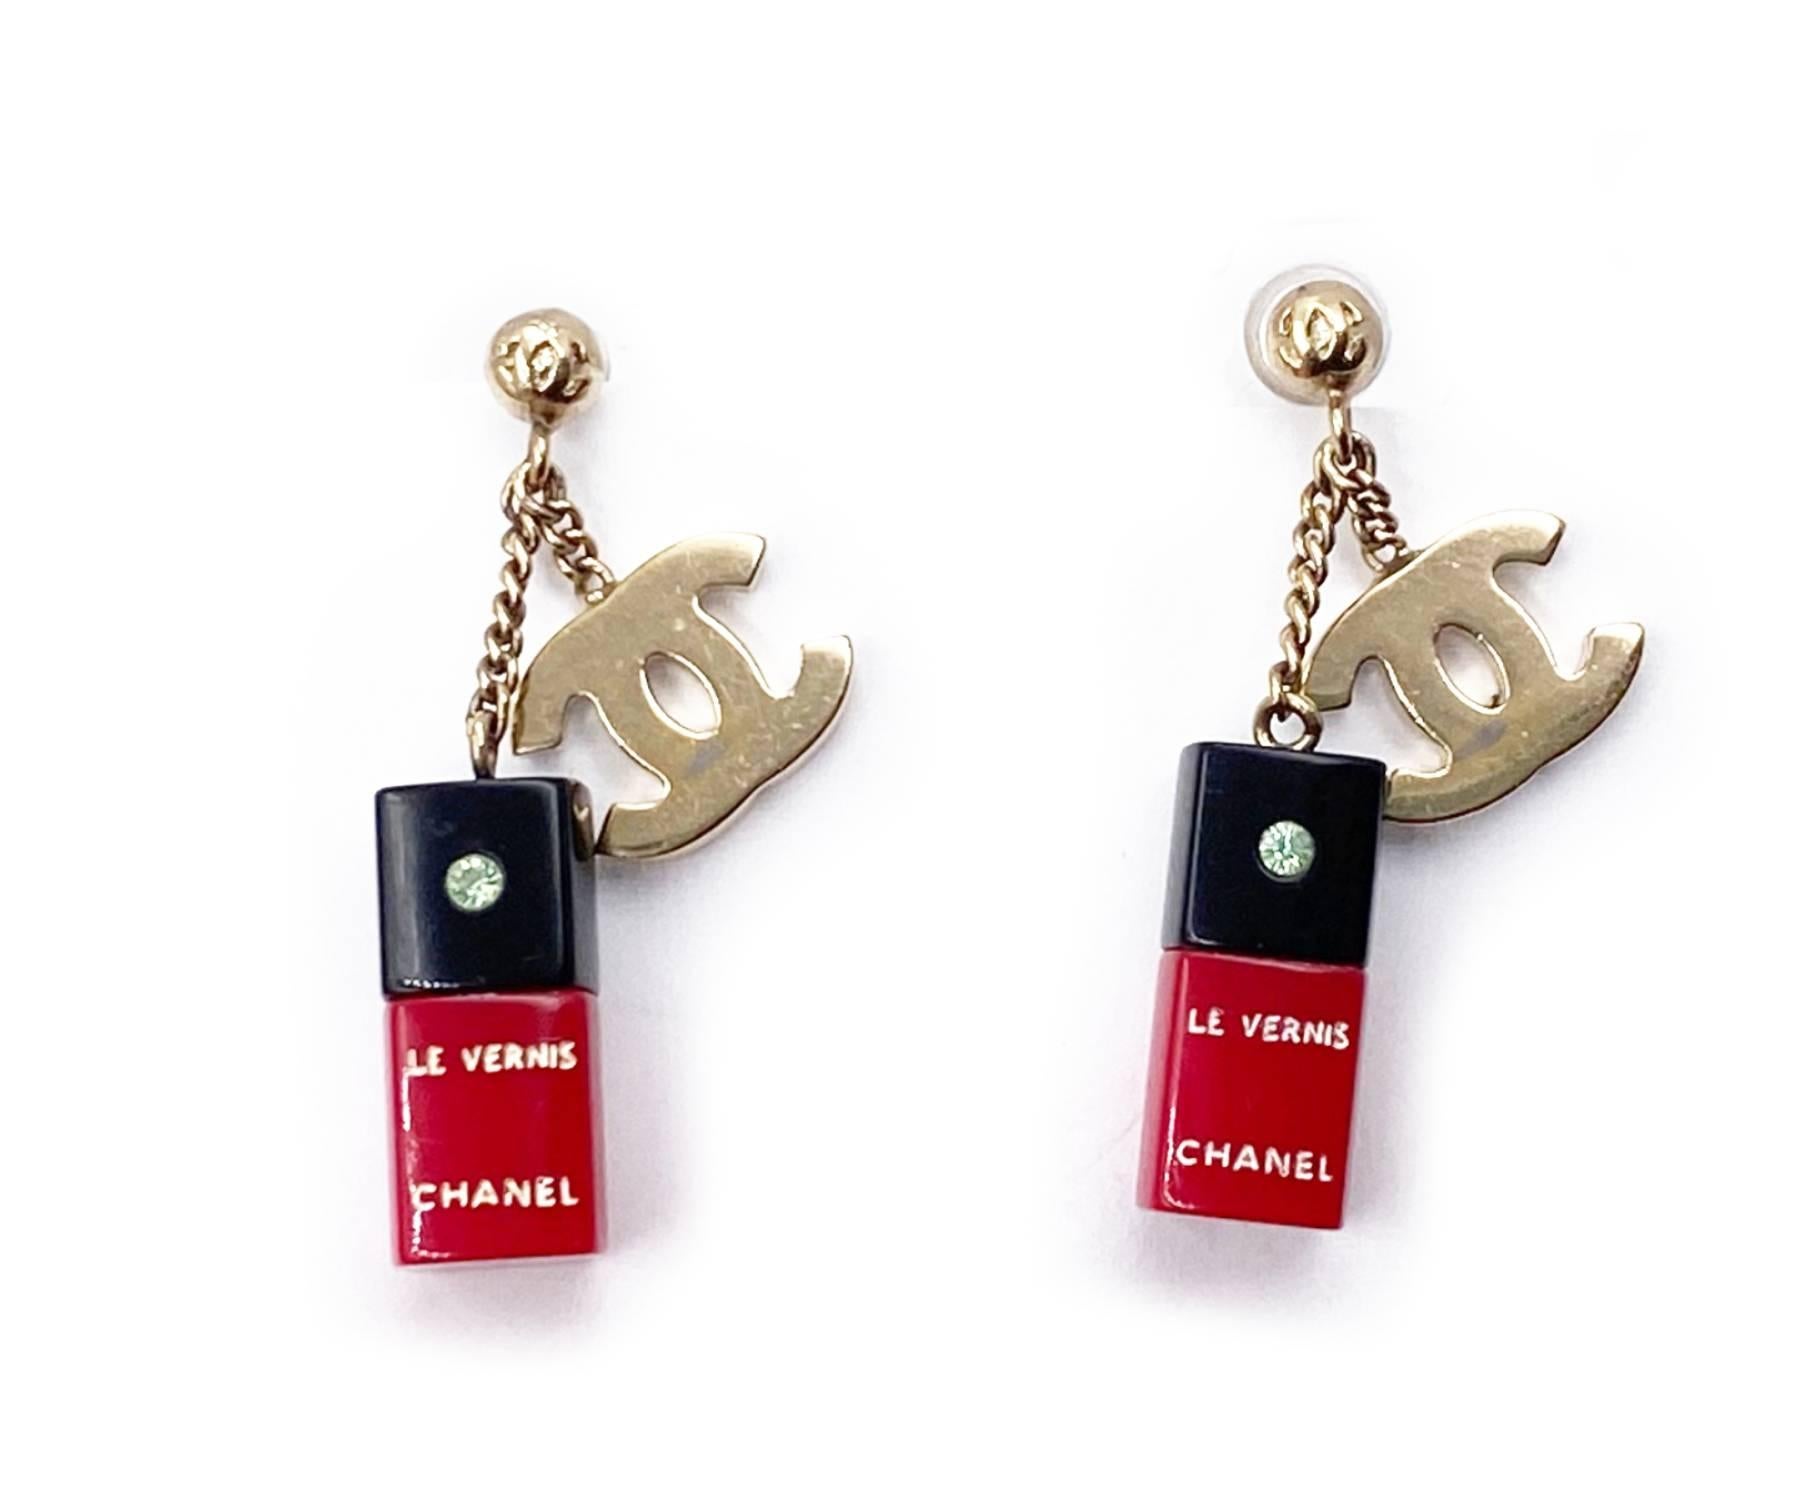 Chanel Vintage Rare Gold CC Red Nail Polish Piercing Ohrringe

*Markierung 04
*Hergestellt in Italien
*Kommt mit Originalverpackung

-ca. 1,5″ x 0,5″
-sehr hübsch und selten
-Die CCs weisen eine leichte Farbabweichung auf.

2034-45201